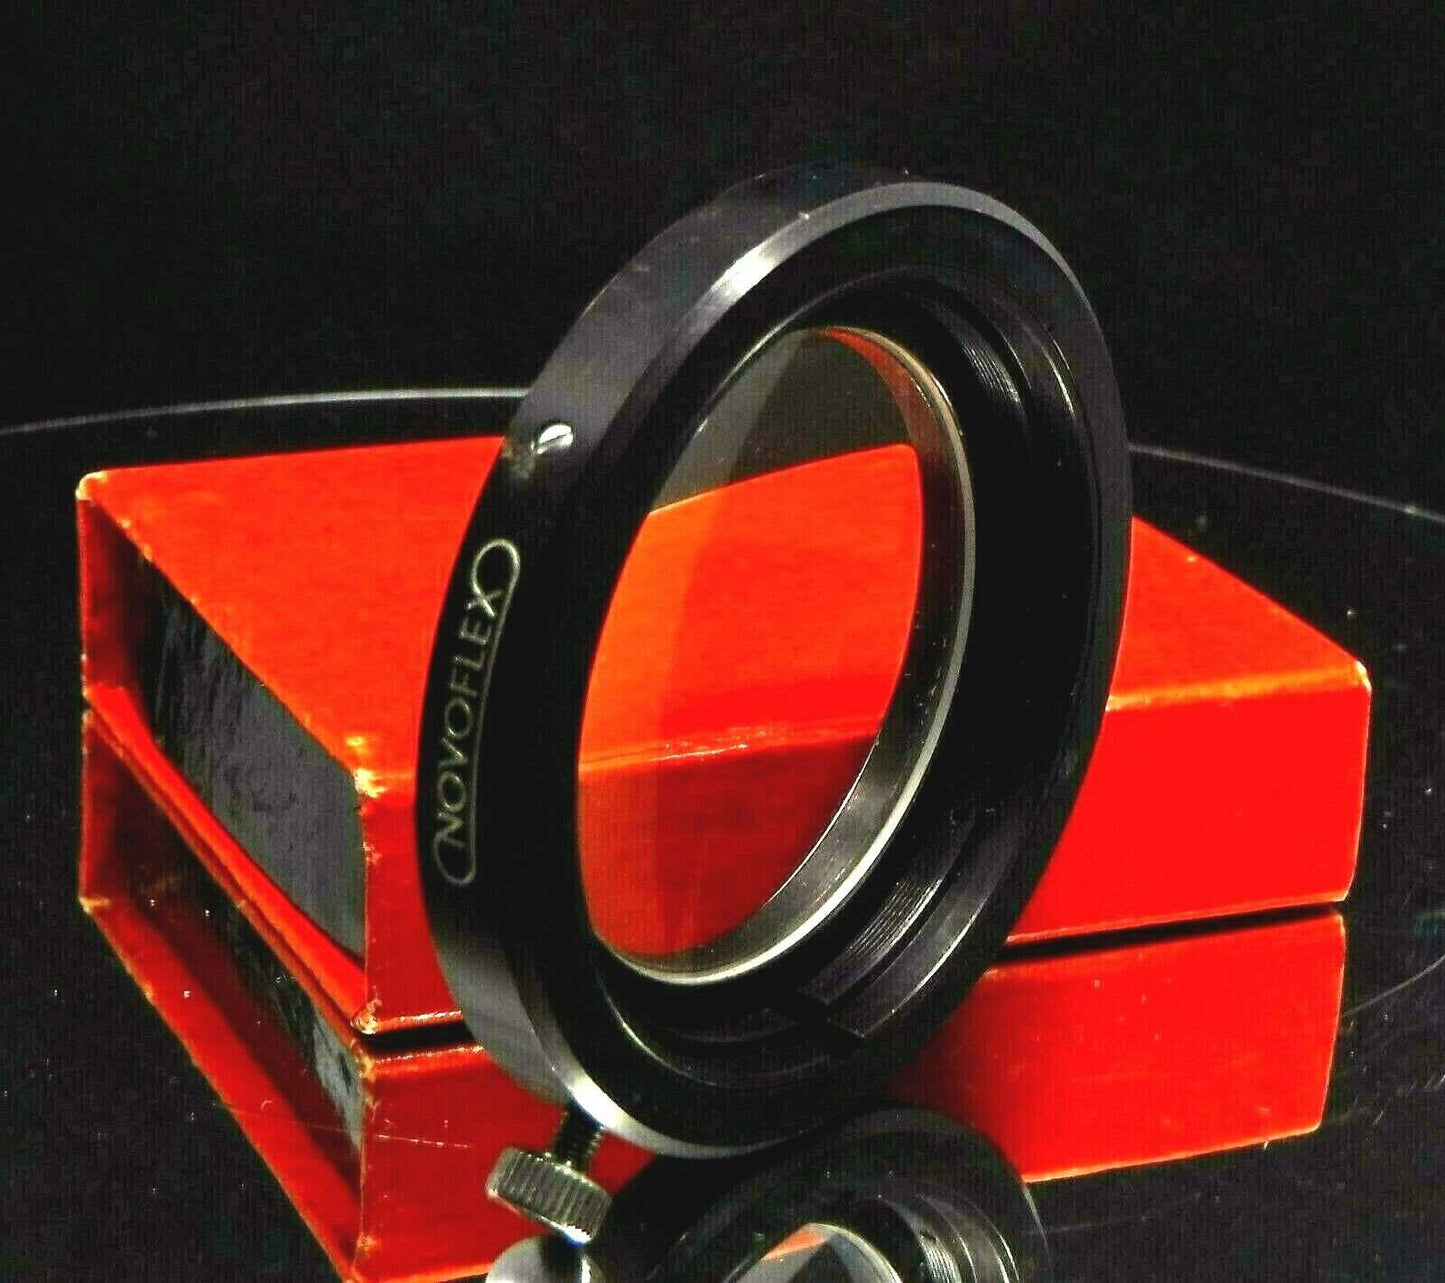 Camera Lens Close-Up NOVOFLEX BALENS CLOSE-UP LENS